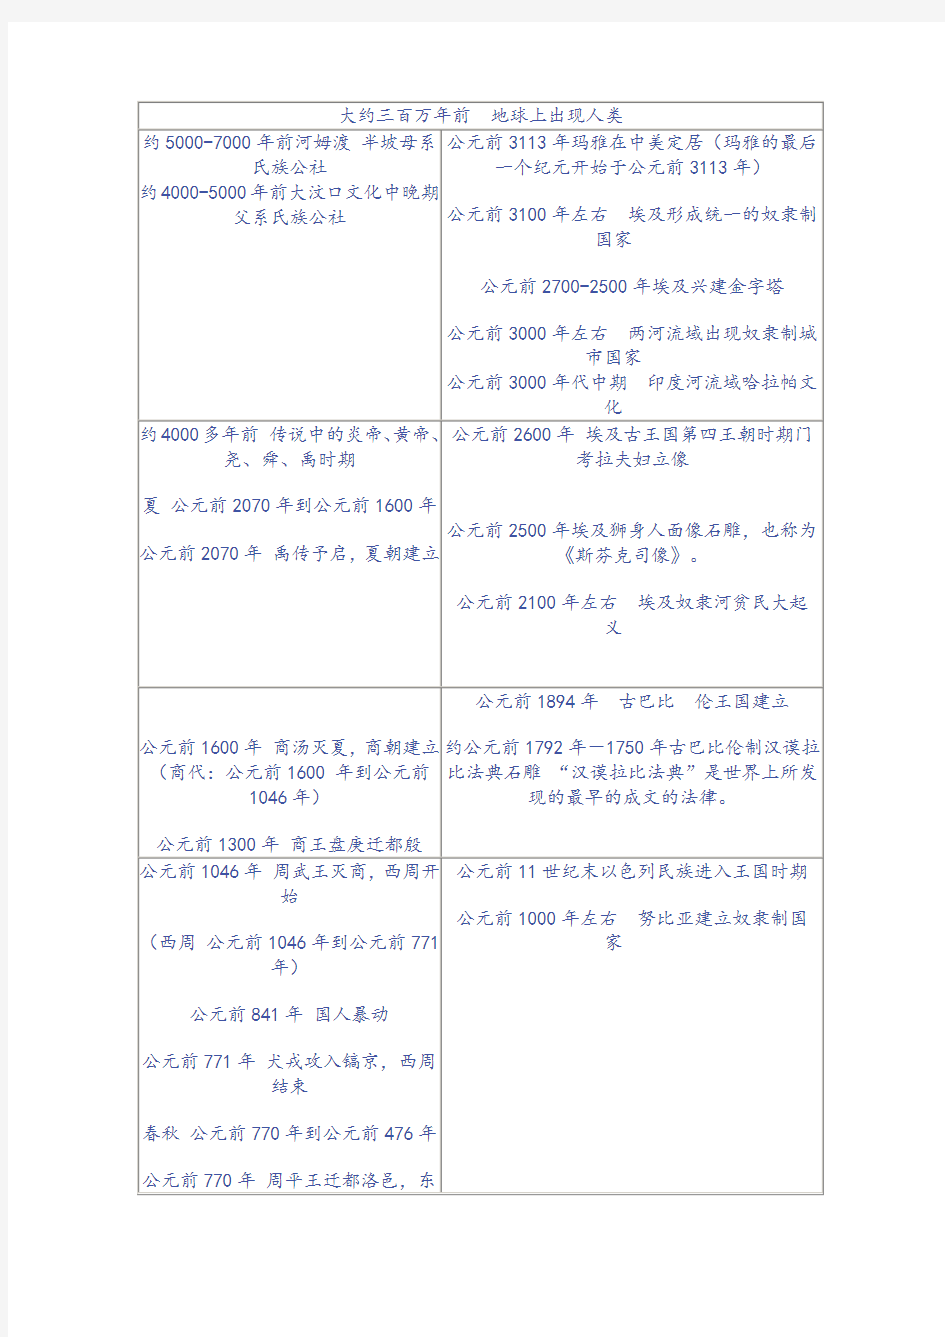 世界史-中国史时间节点对照表